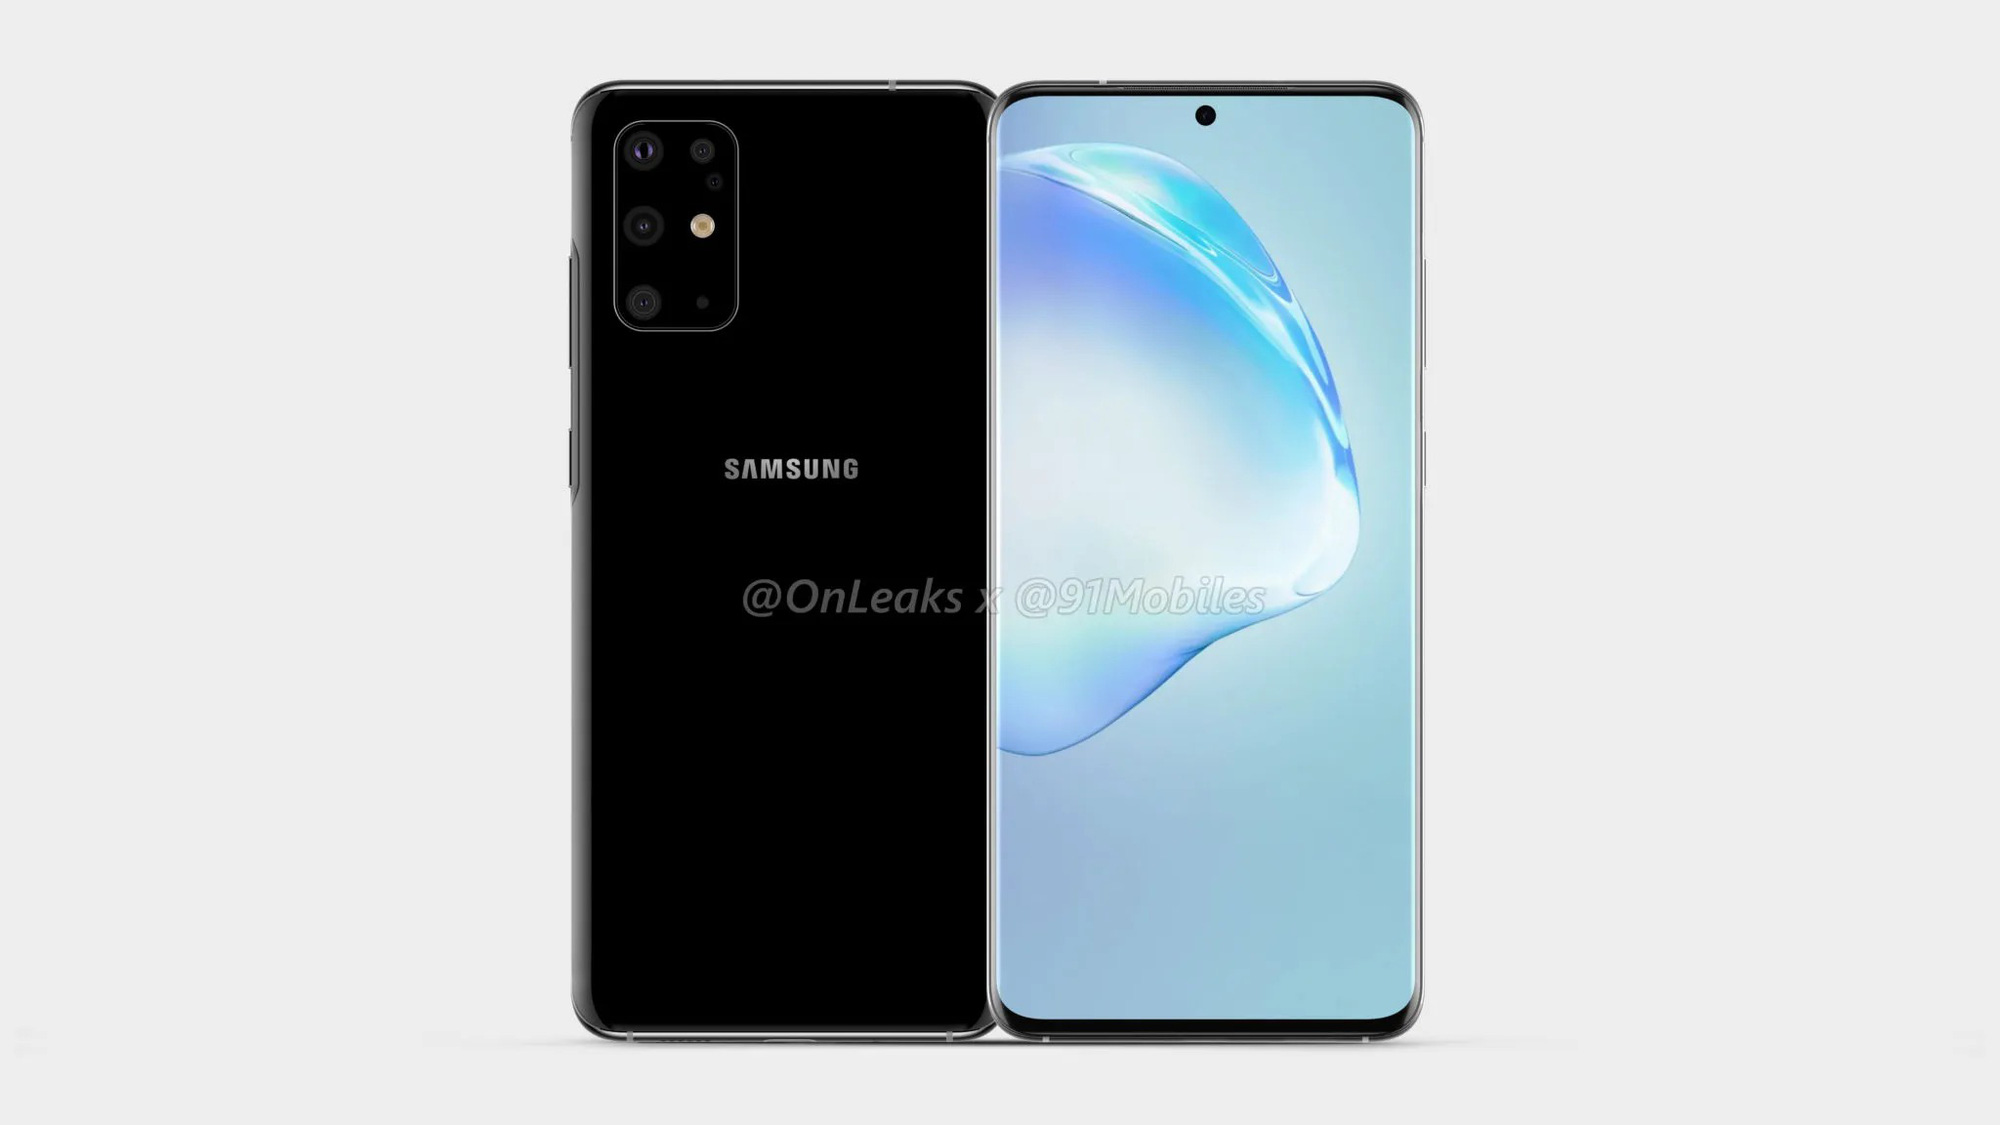 Galaxy S11 lộ ảnh render: Thiết kế màn hình với camera selfie đục lỗ giống Note10, cụm 5 camera hình chữ nhật, ra mắt tháng 2 năm sau